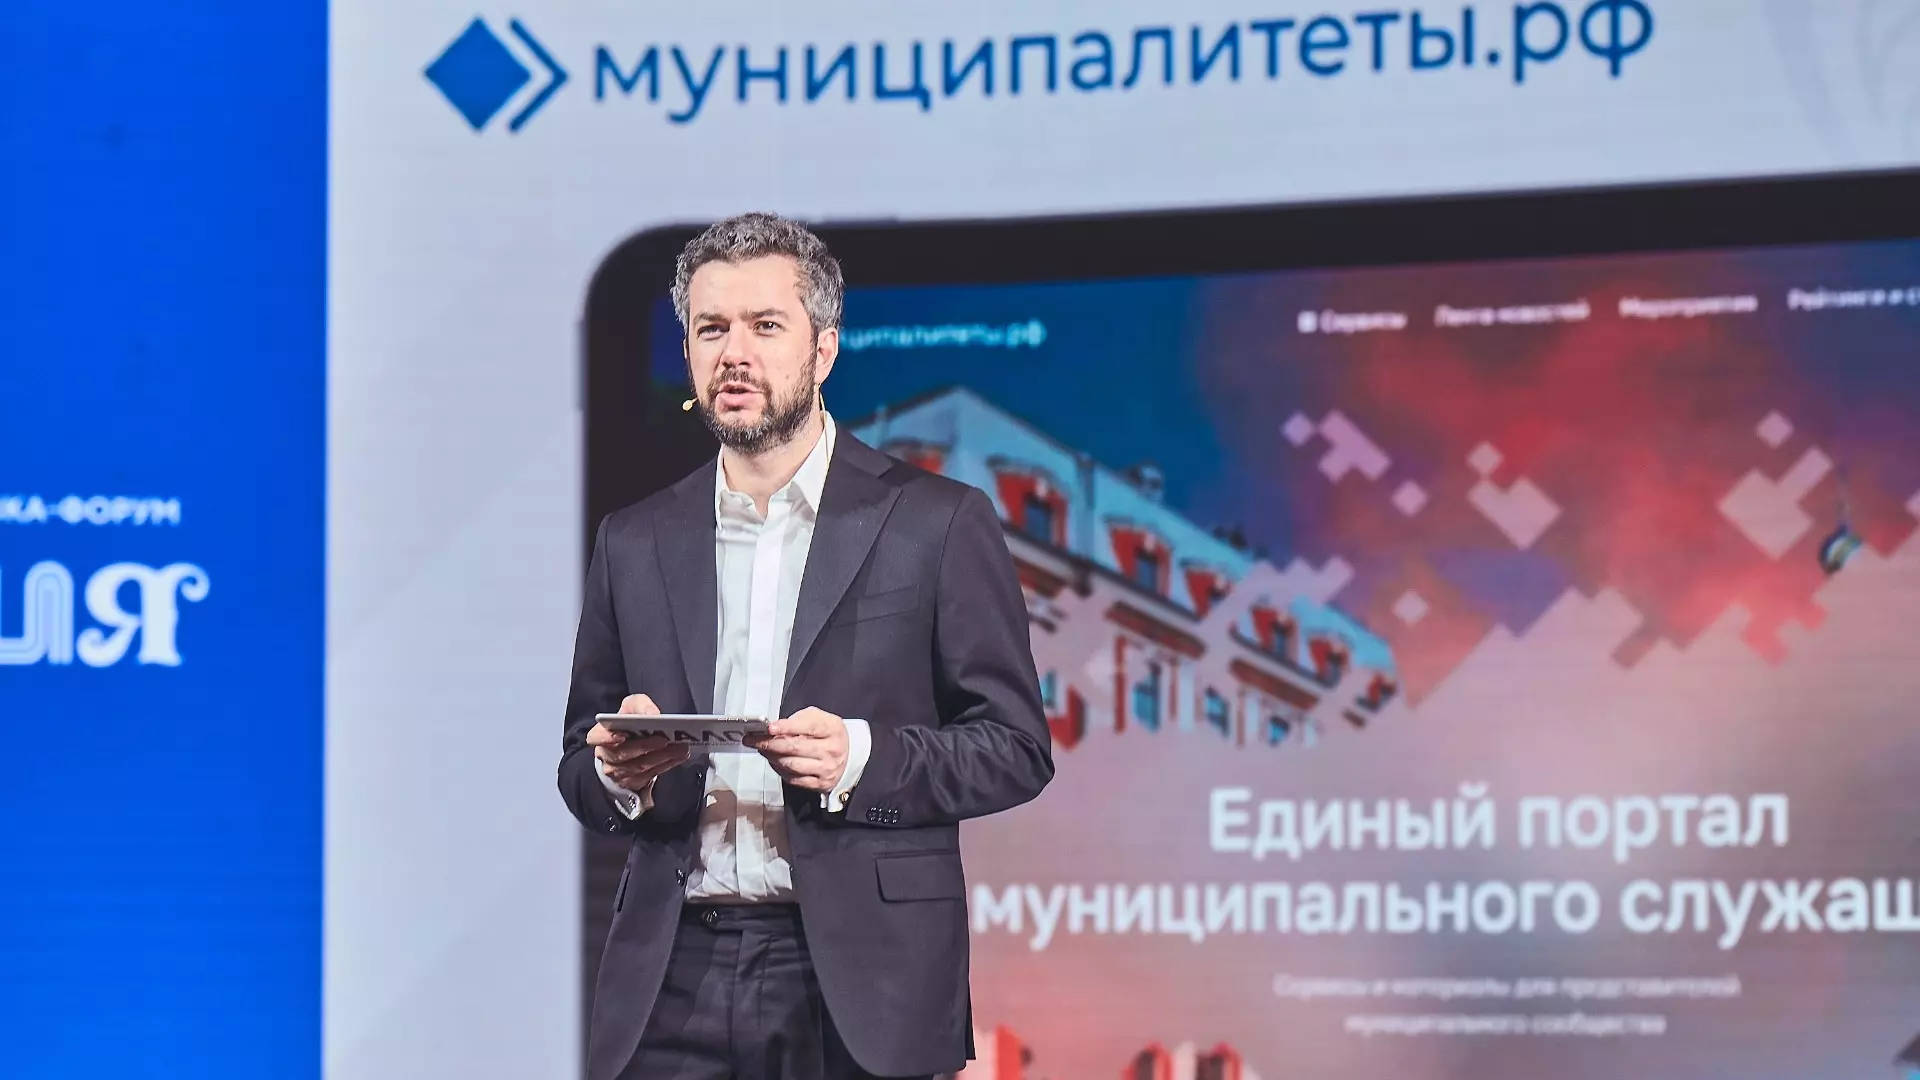 В России появился первый цифровой портал для муниципальных служащих